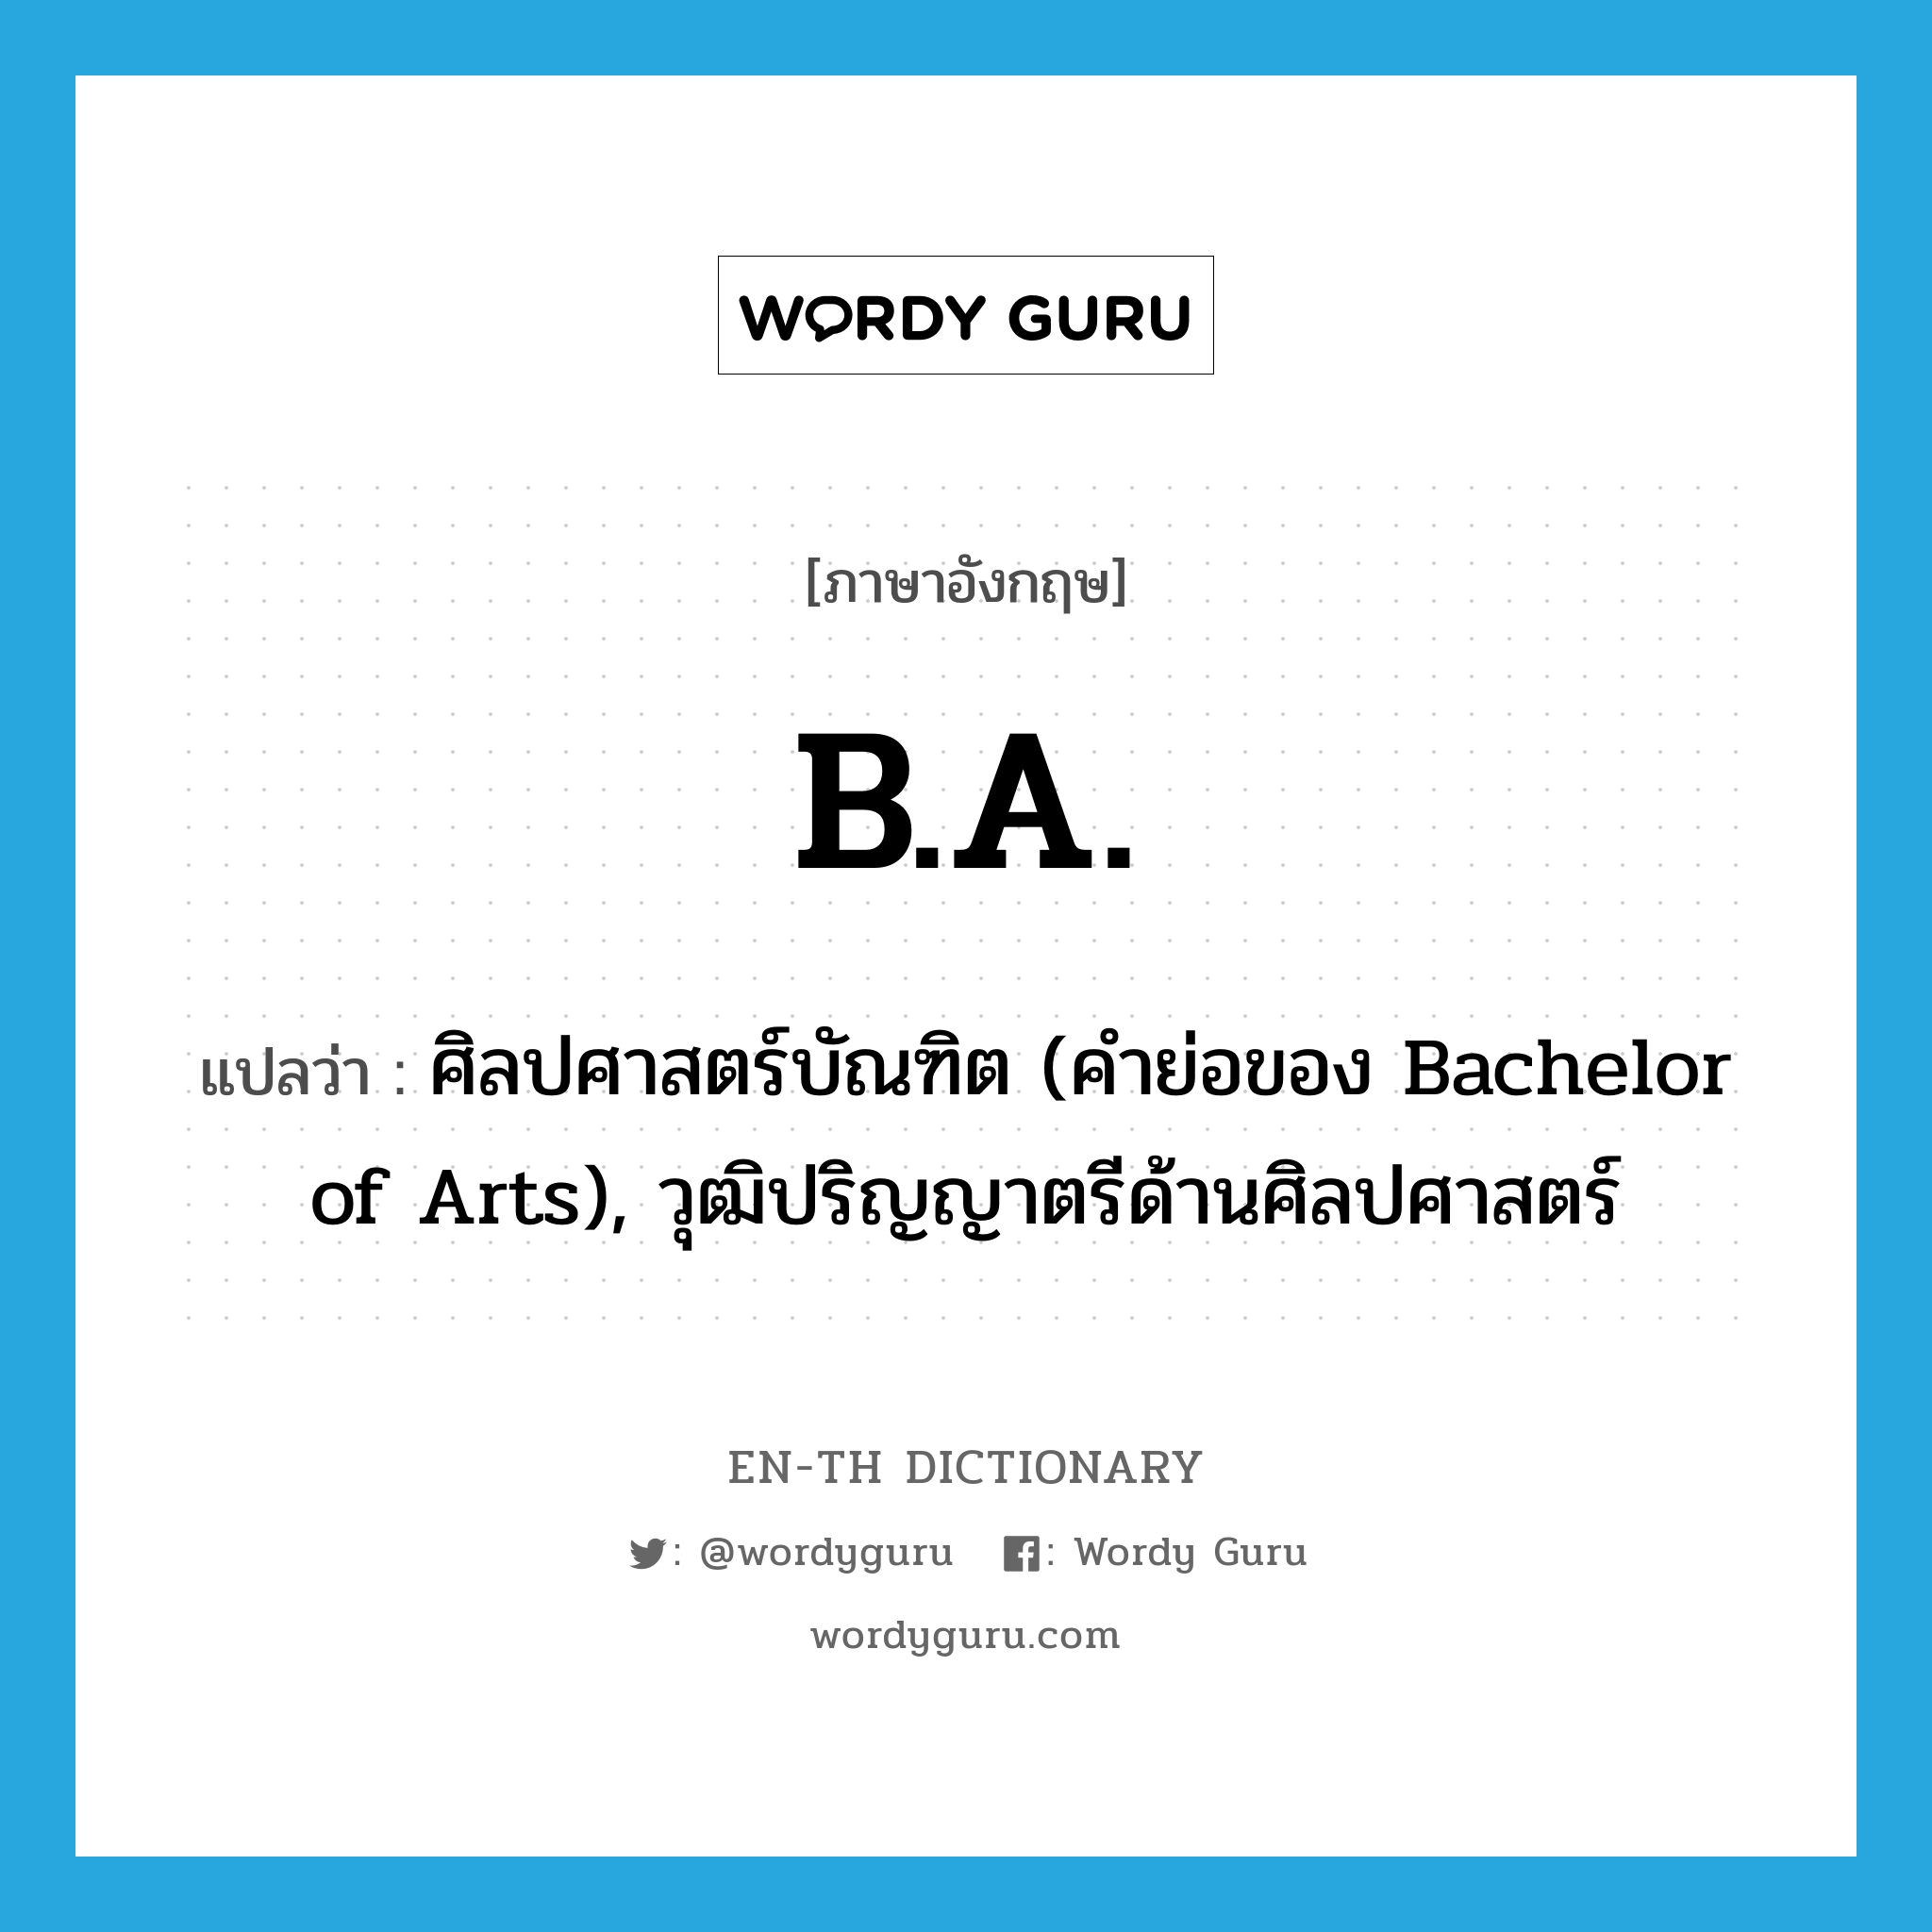 ศิลปศาสตร์บัณฑิต (คำย่อของ Bachelor of Arts), วุฒิปริญญาตรีด้านศิลปศาสตร์ ภาษาอังกฤษ?, คำศัพท์ภาษาอังกฤษ ศิลปศาสตร์บัณฑิต (คำย่อของ Bachelor of Arts), วุฒิปริญญาตรีด้านศิลปศาสตร์ แปลว่า B.A. ประเภท ABBR หมวด ABBR